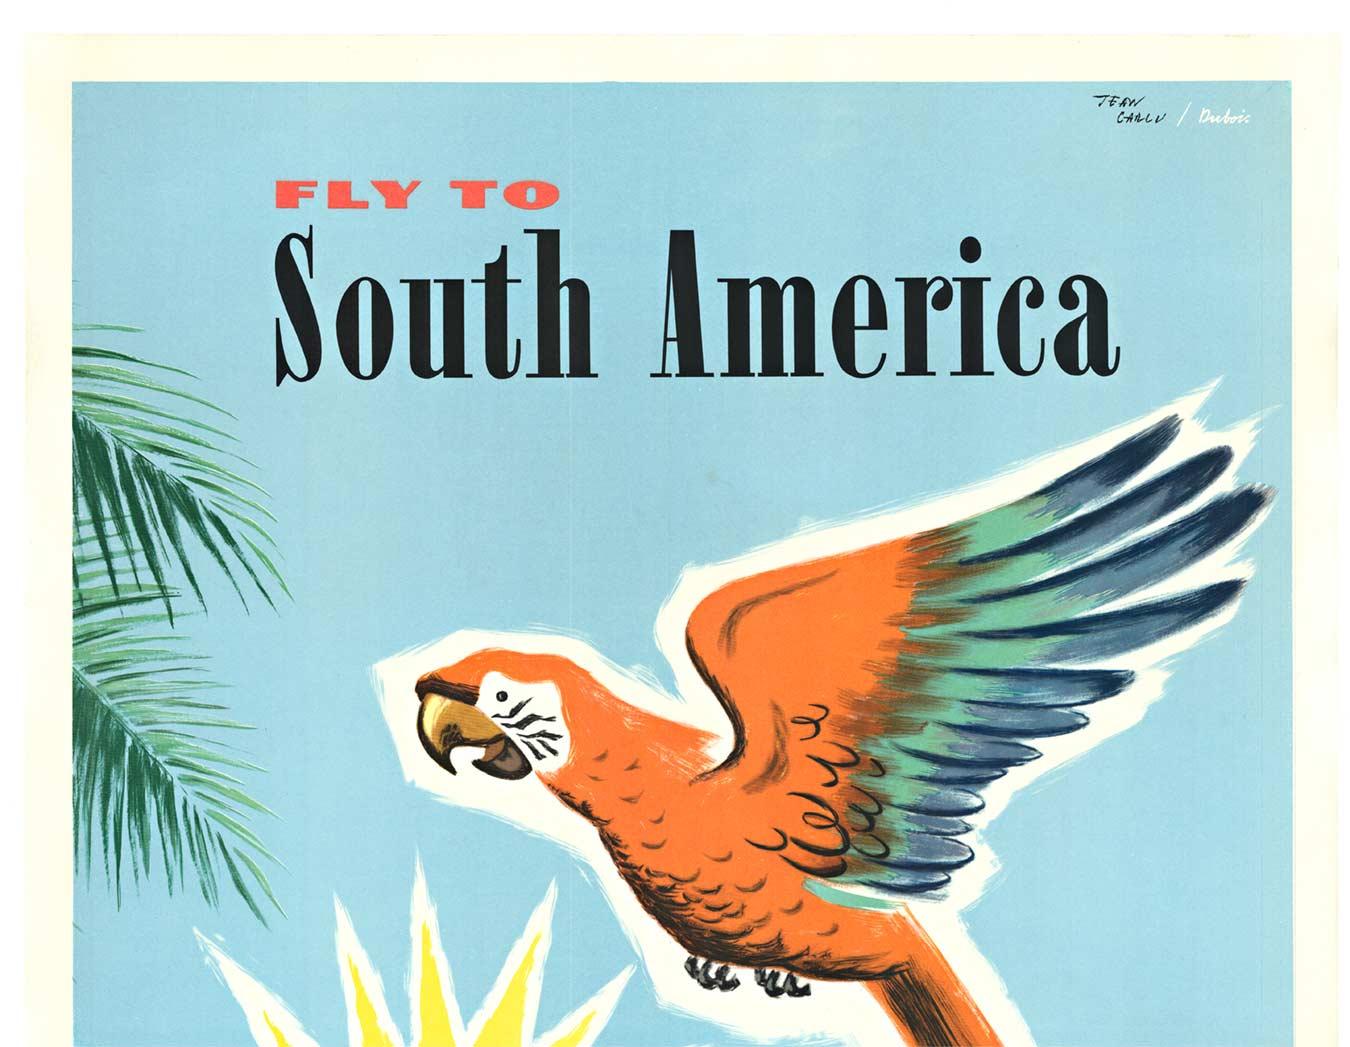 Affiche de voyage vintage originale « Fly to South America » (Fly to South America) - Panagra - Print de Jean Carlu